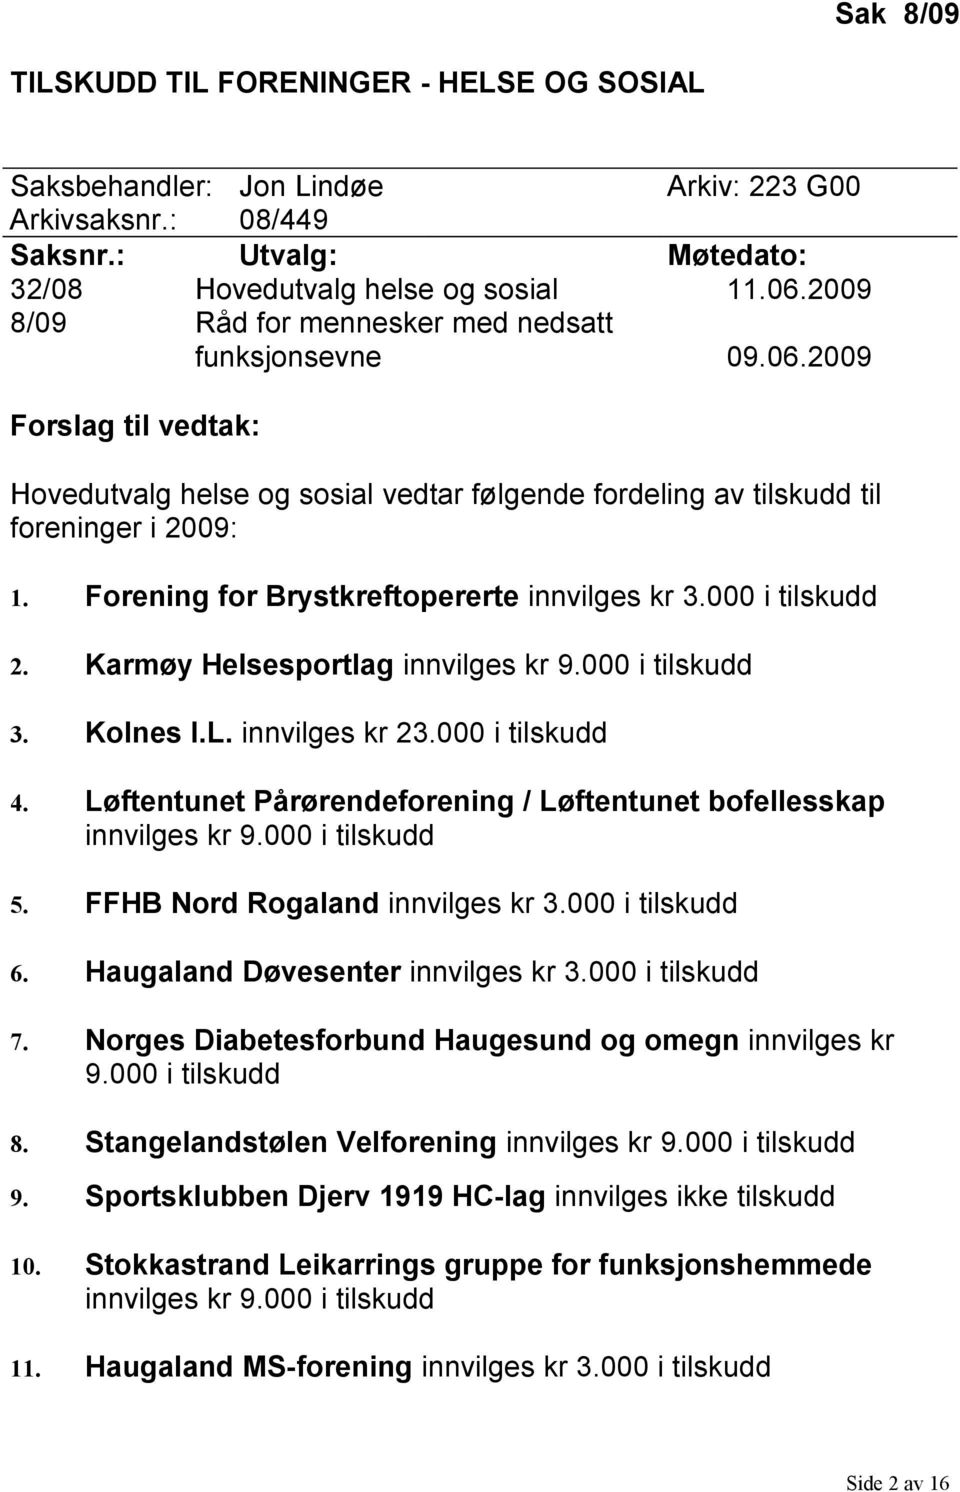 Forening for Brystkreftopererte innvilges kr 3.000 i tilskudd 2. Karmøy Helsesportlag innvilges kr 9.000 i tilskudd 3. Kolnes I.L. innvilges kr 23.000 i tilskudd 4.